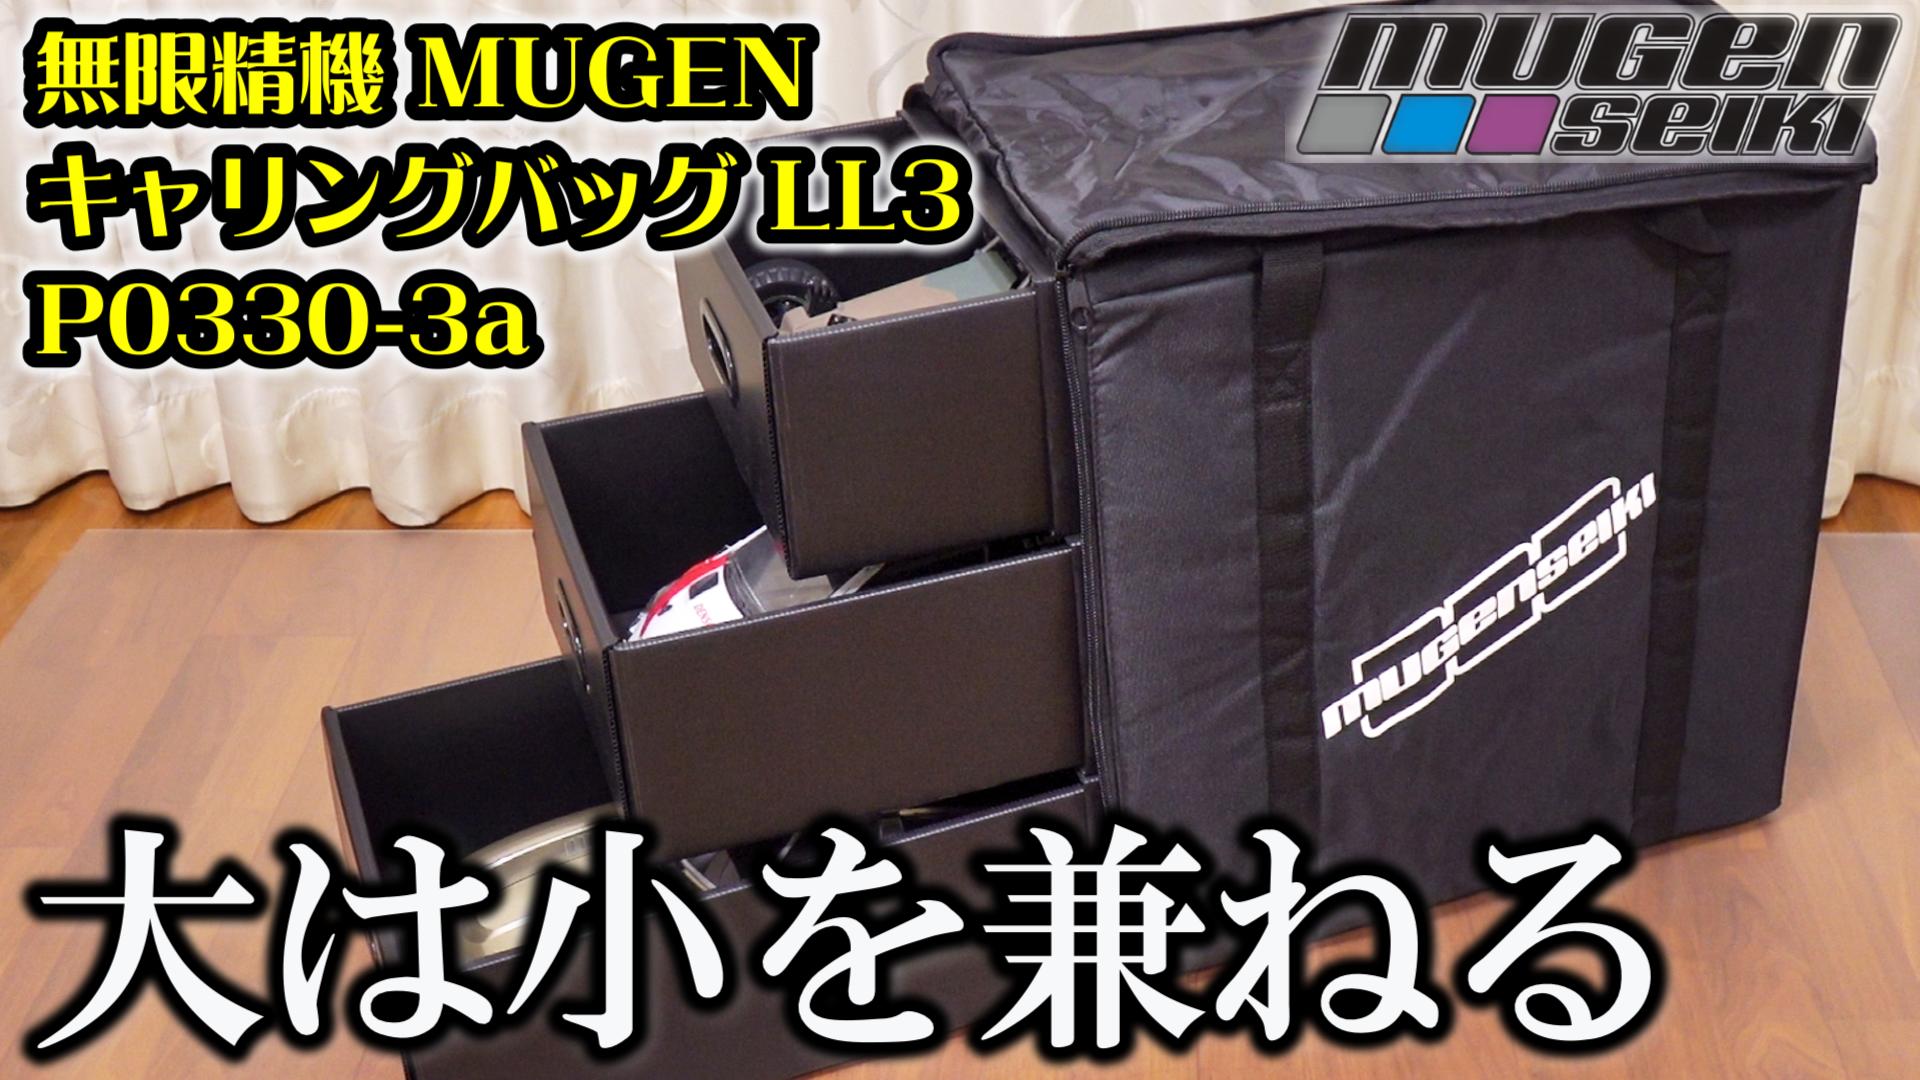 MUGEN Seiki Carrying Bag